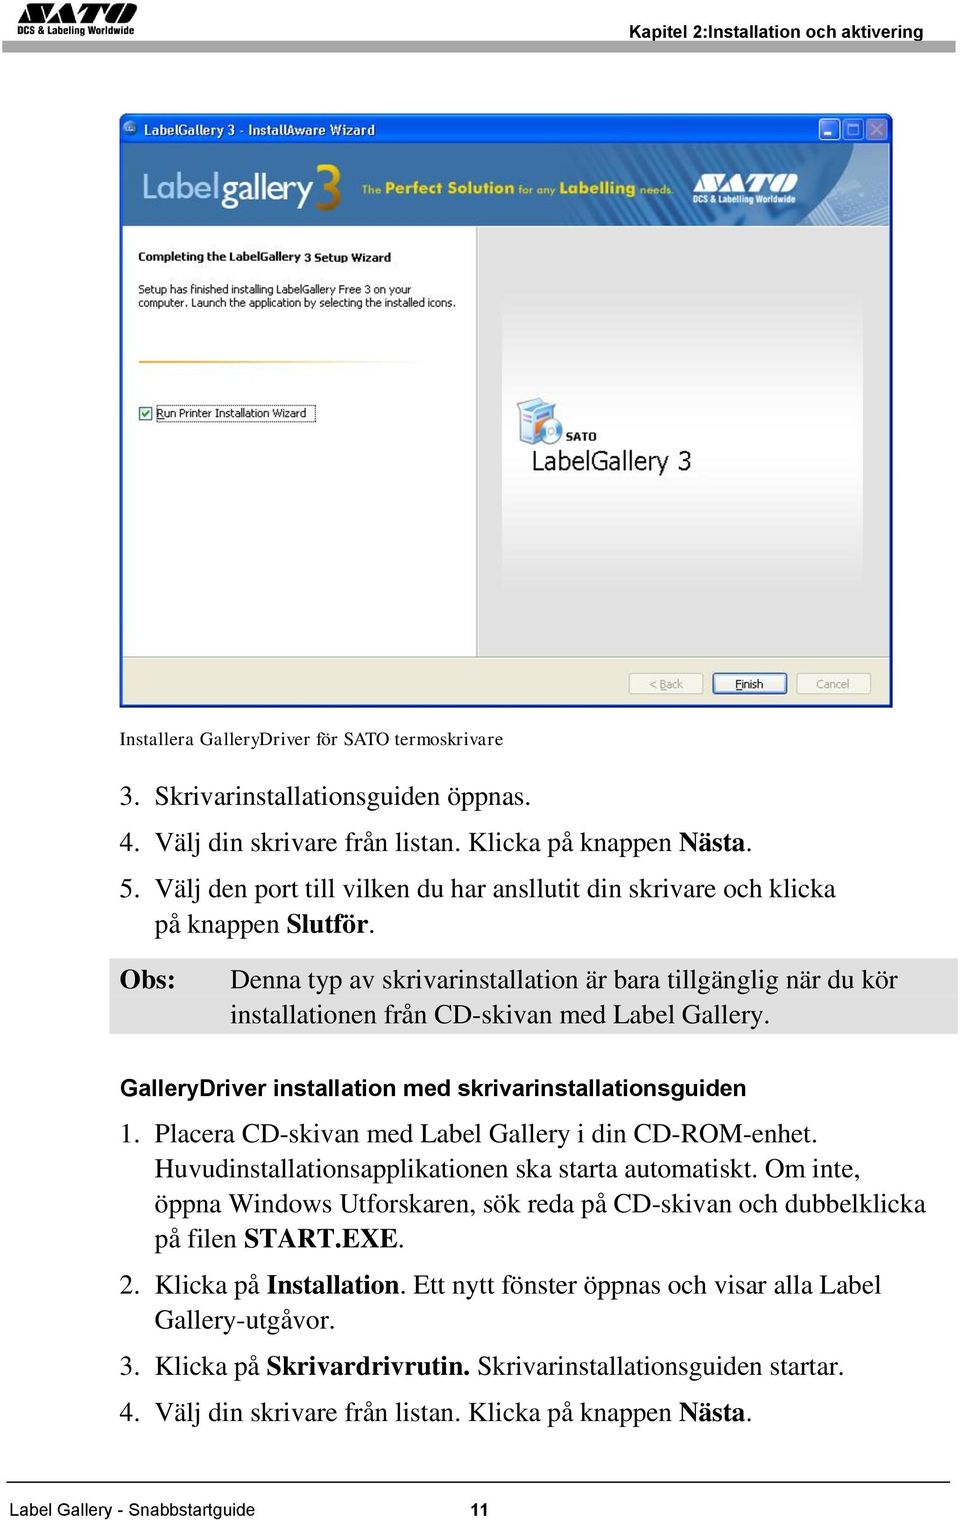 GalleryDriver installation med skrivarinstallationsguiden 1. Placera CD-skivan med Label Gallery i din CD-ROM-enhet. Huvudinstallationsapplikationen ska starta automatiskt.